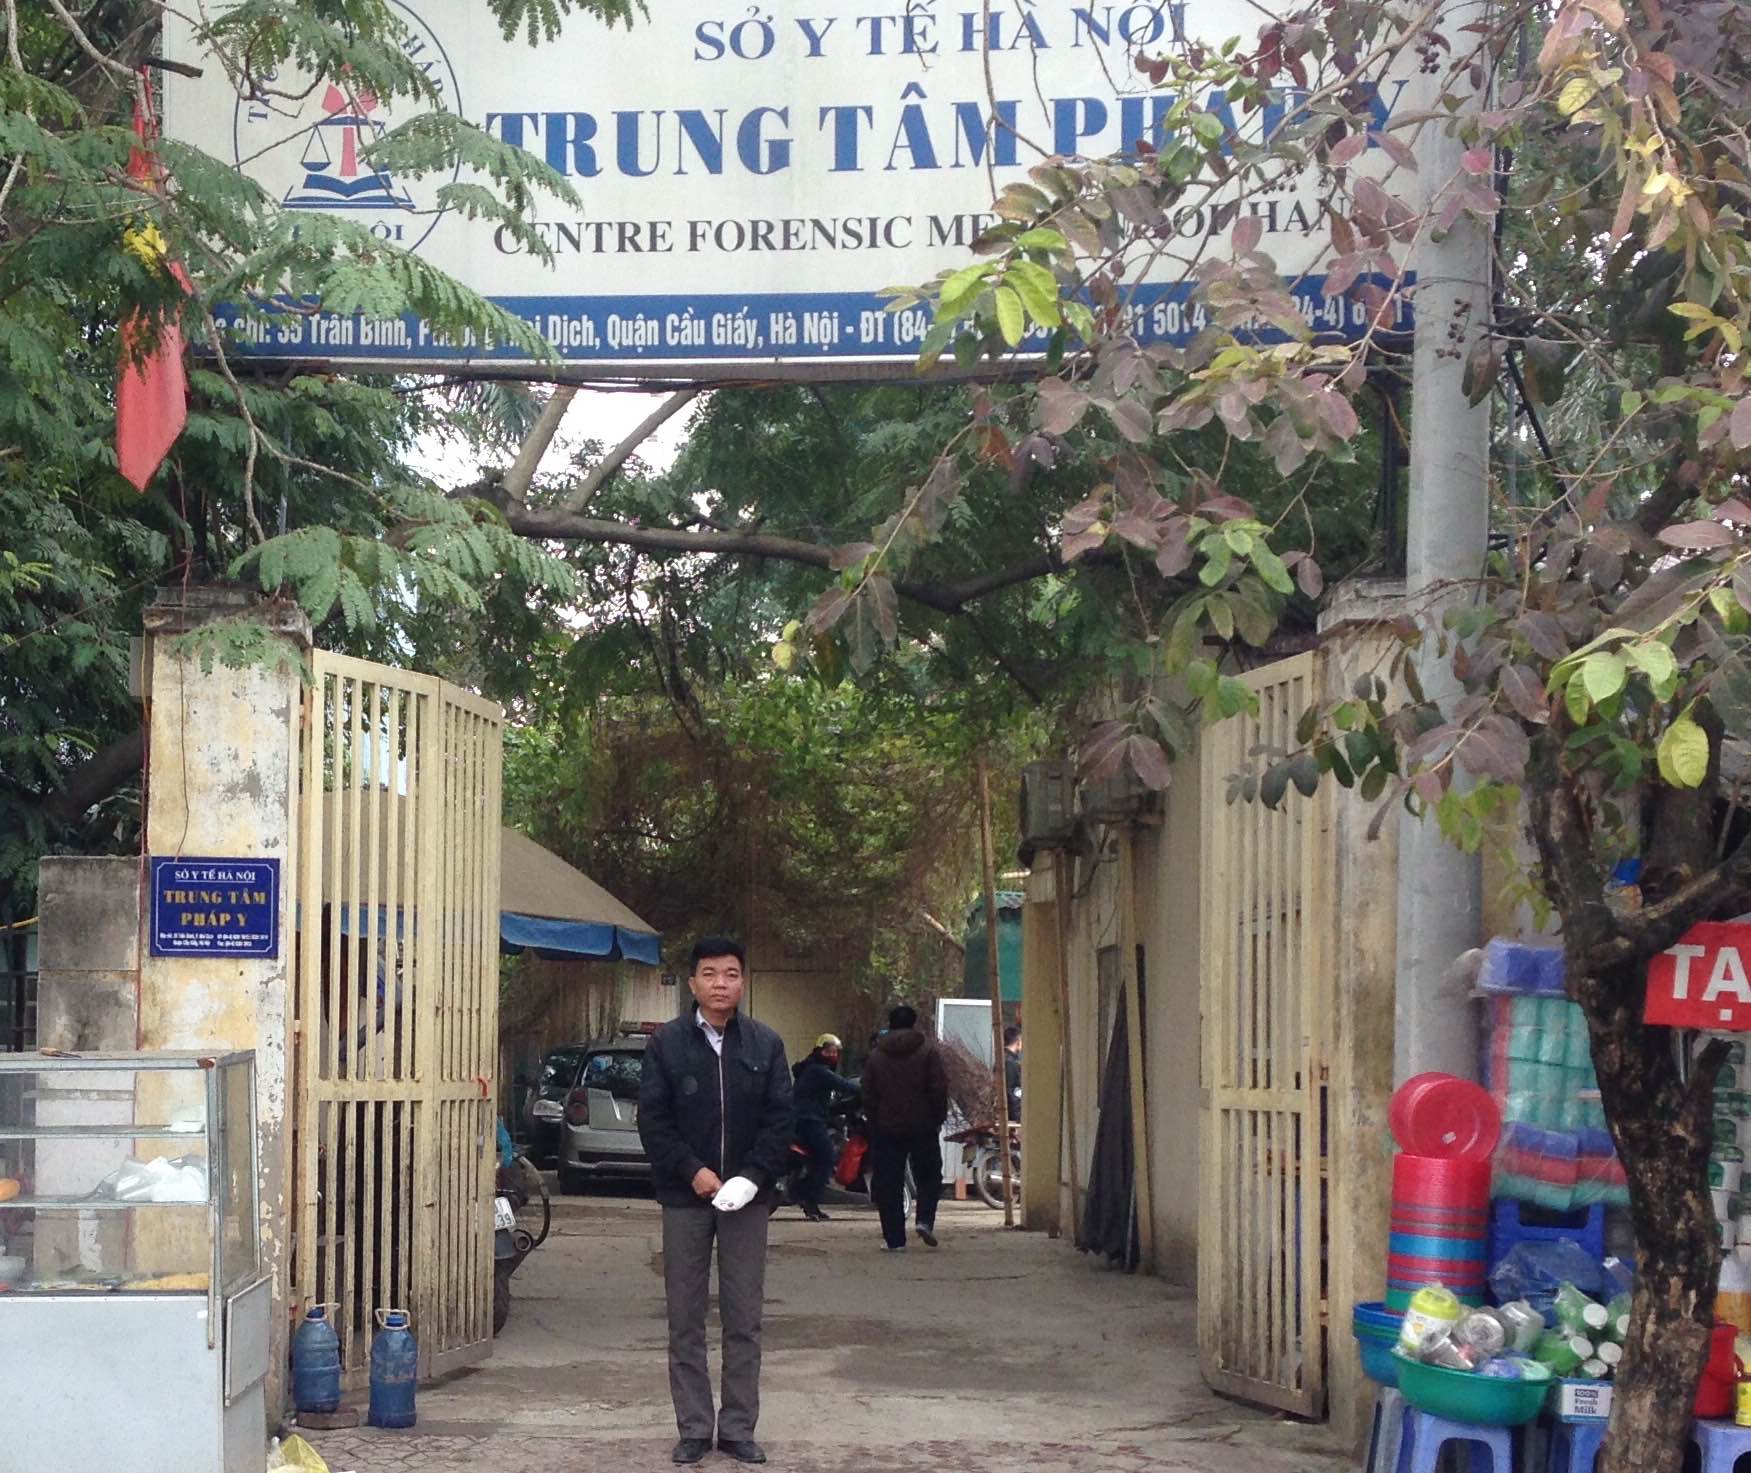 Ông Nguyễn Đoàn Bộ tới giám định thương tật tại Trung tâm Pháp y, Sở Y tế Hà Nội.